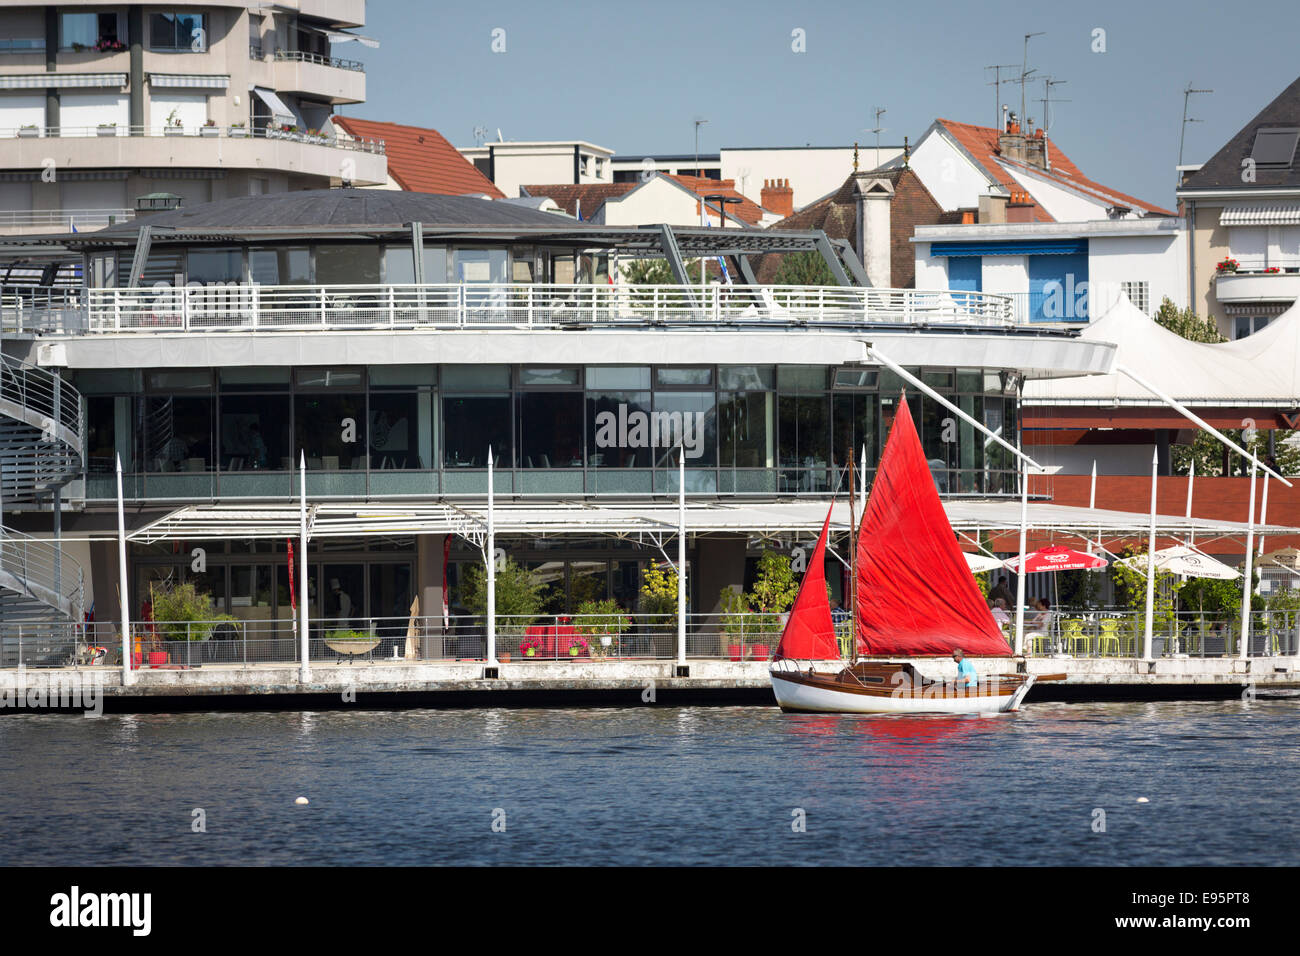 En été, un petit bateau à voile rouge sur le lac de l'Allier (Vichy). Petit voilier à voiles rouges sur le Lac d'Allier, à Vichy. Banque D'Images